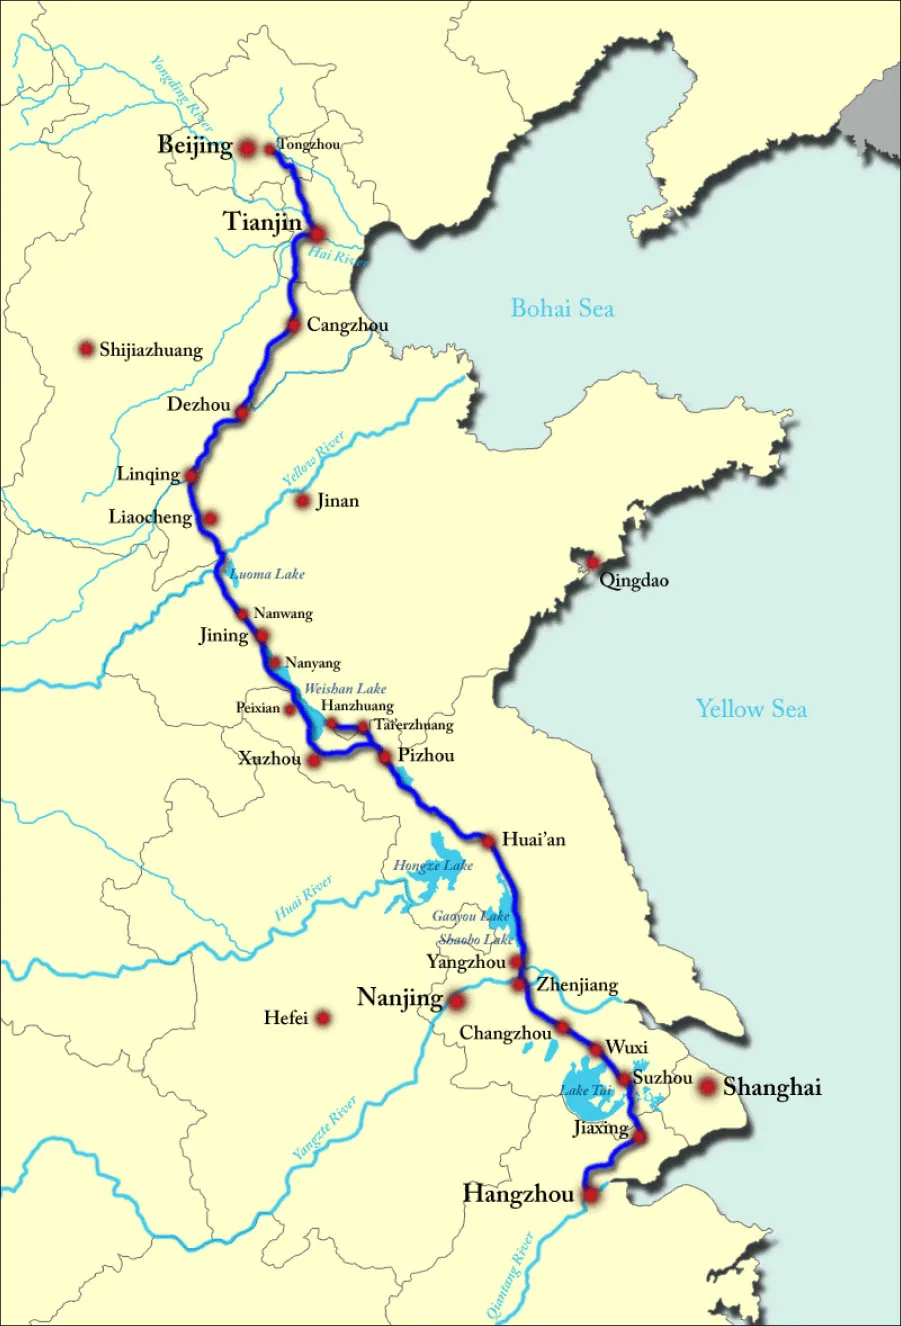 A map of an eastern portion of China is shown with the Bohai Sea and the Yellow Sea on the right. A blue line is shown starting from the north in Beijing and ending in the south at Hangzhou, passing through these cities along the way: Tongzhou, Tianjin, Changzhou, Dezhou, Linqing, Liaocheng, Nanwang, Jining, Nanyang, Peixian, Xuzhou, Pizhou, Huai’an, Yangzhou, Zhenjiang, Changzhou, Wuxi, Suzhou, and Jiaxing. At Pizhou the blue line heads north through Tai’erzhnang and ends at Hanzhuang. Other cities that are labeled from north to south are: Shijiazhuang, Jinan, Qingdao, Nanjing, Hefei, and Shanghai.